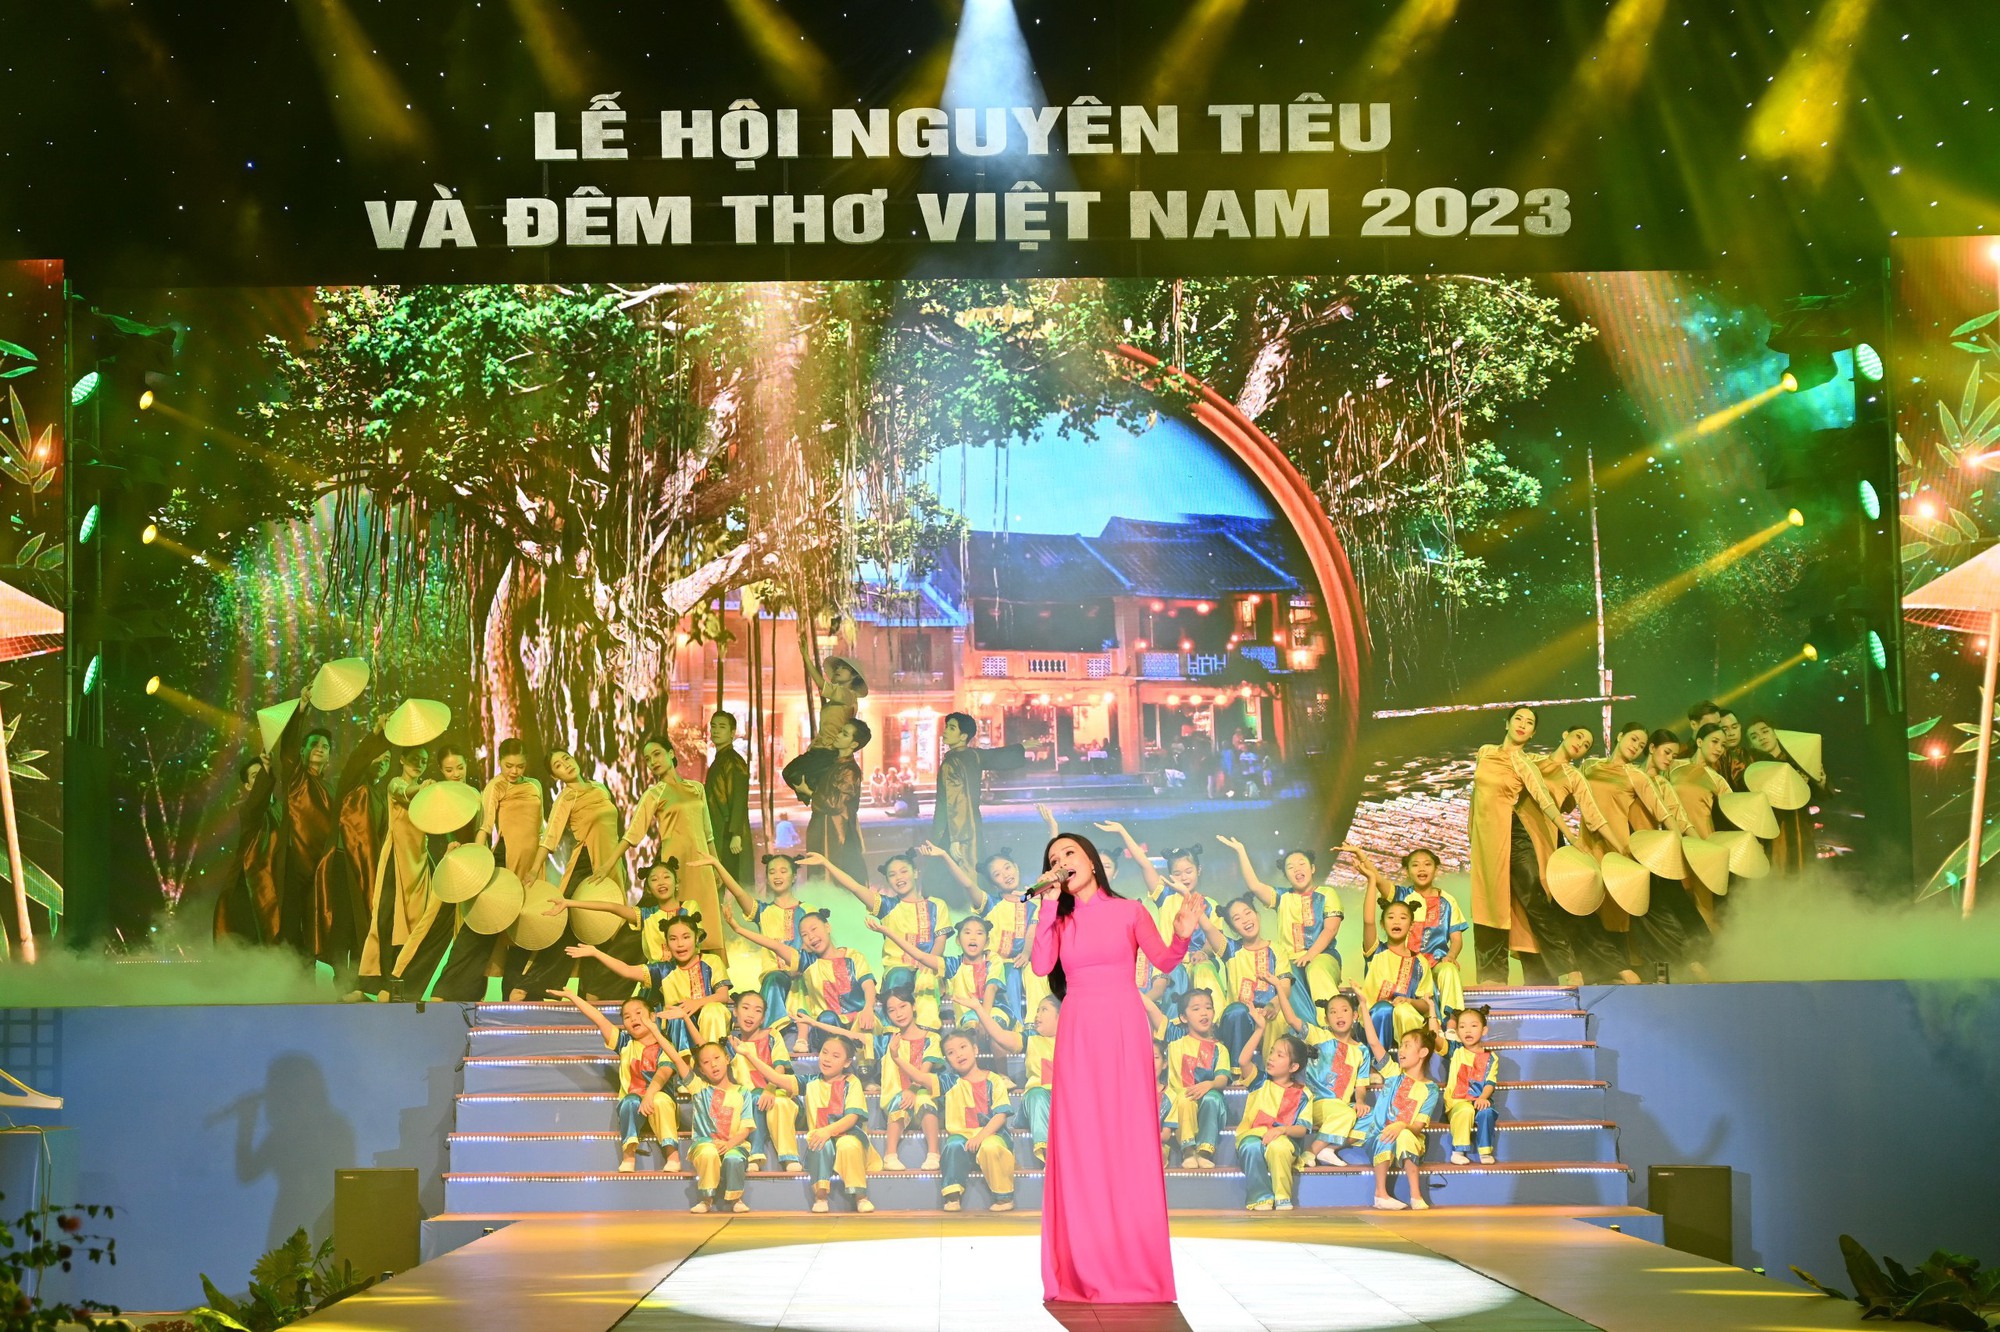 Đêm thơ Việt Nam 2023: Gieo yêu thương từ những vần thơ đẹp - Ảnh 2.